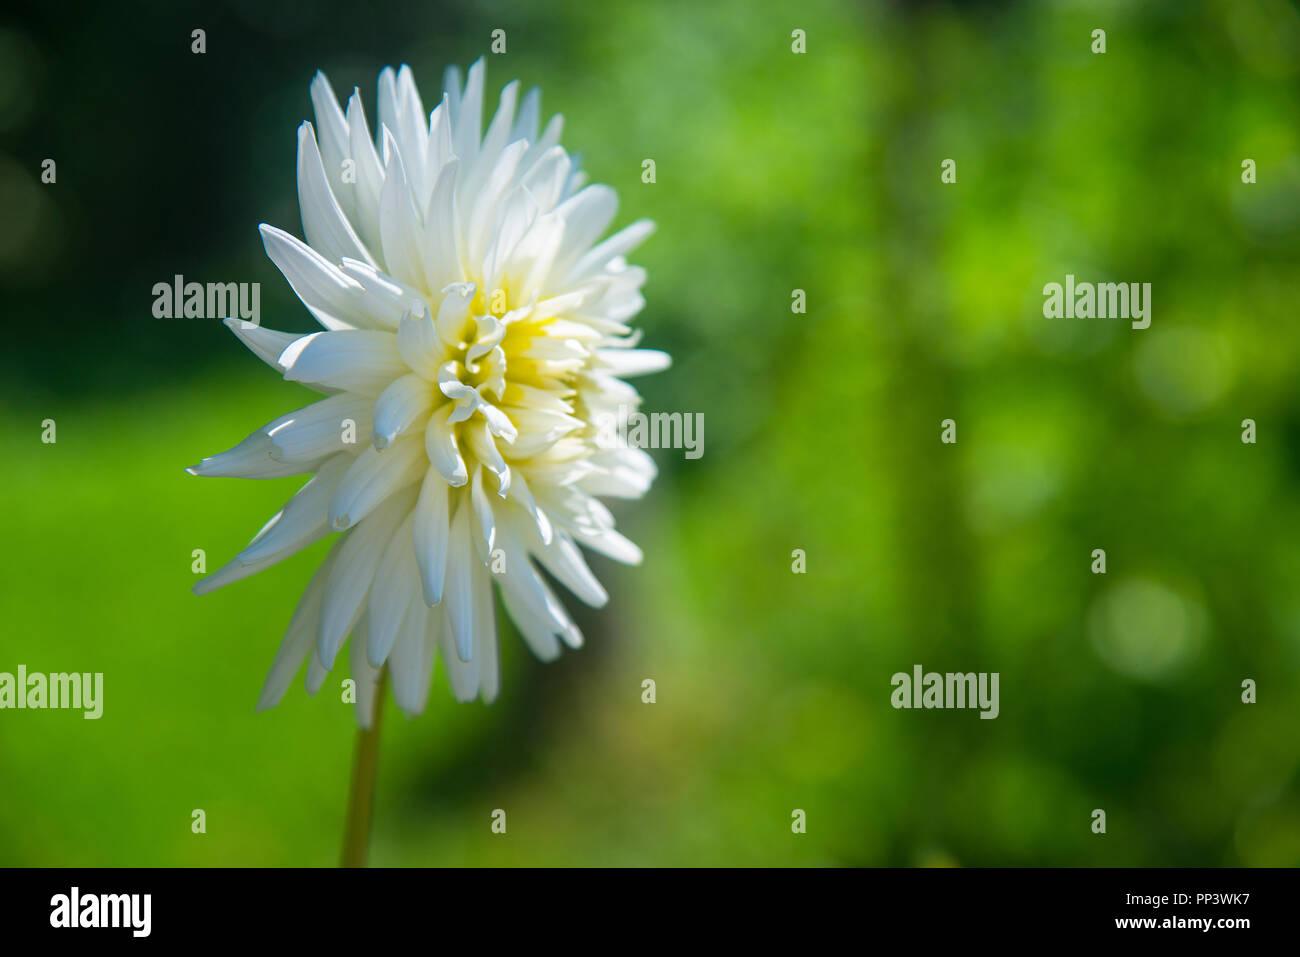 White dahlia flower. Stock Photo